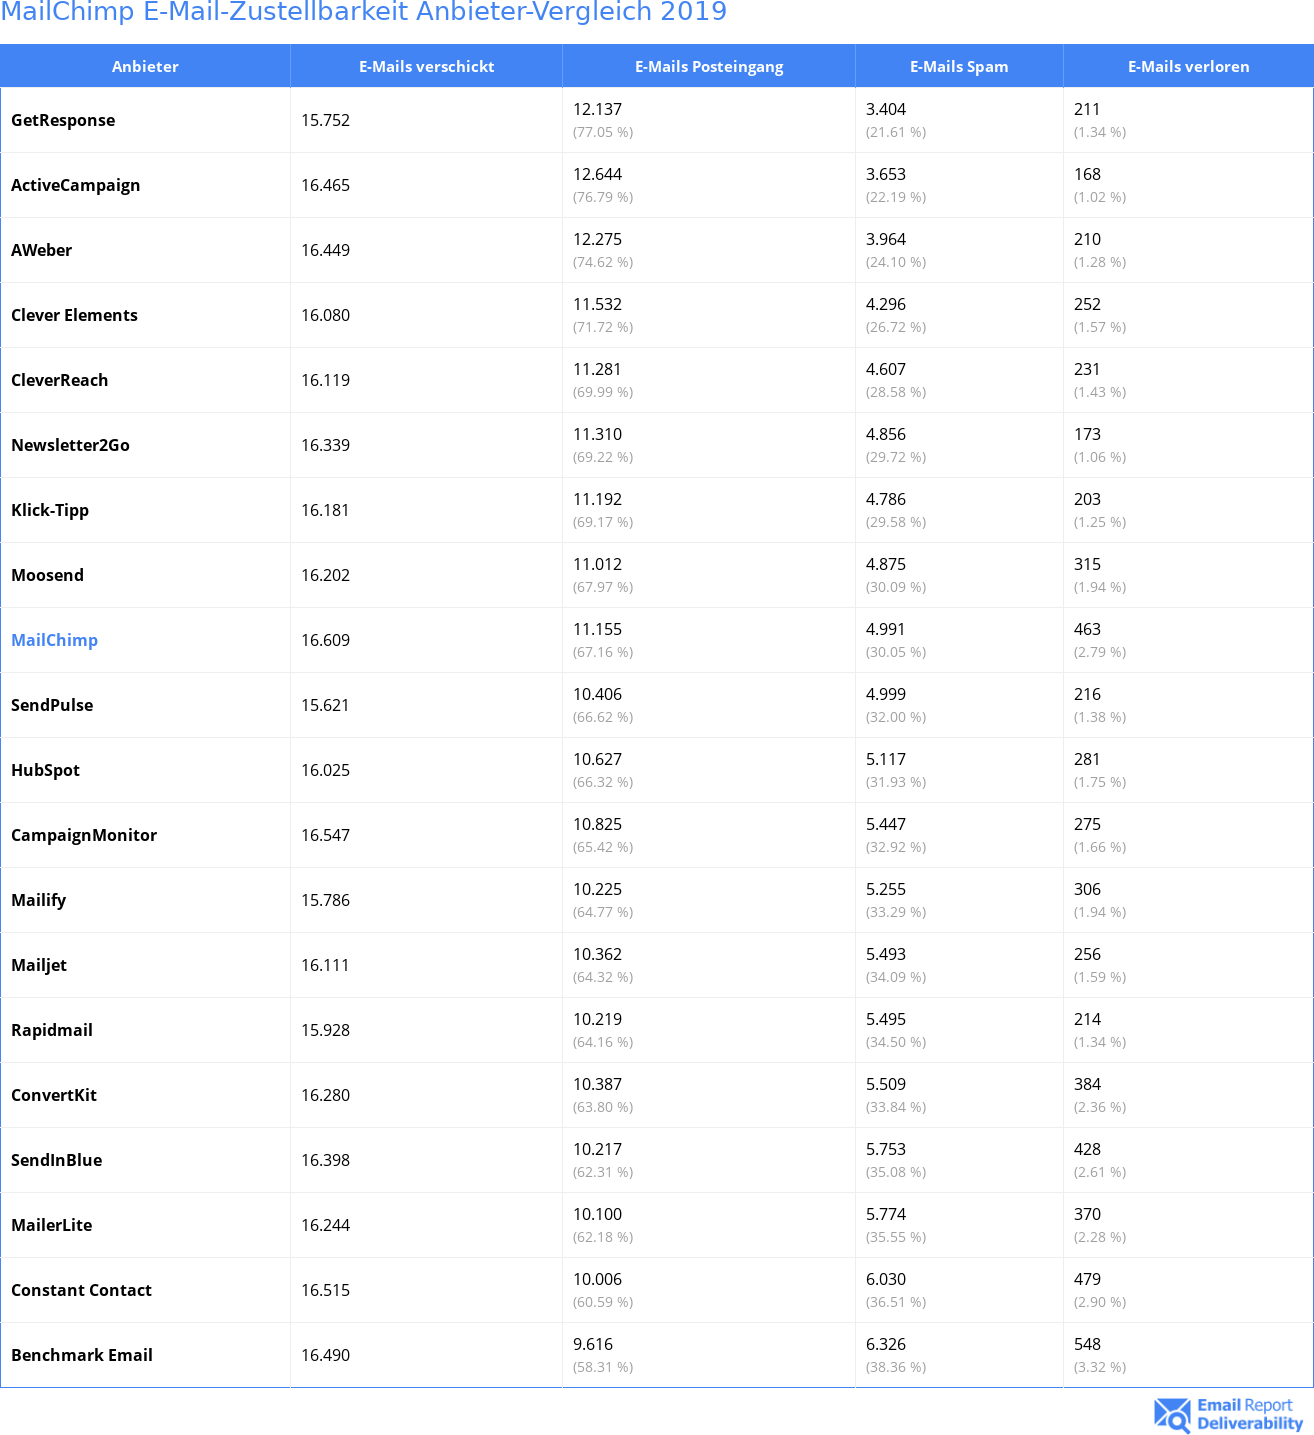 MailChimp E-Mail-Zustellbarkeit Anbieter-Vergleich 2019